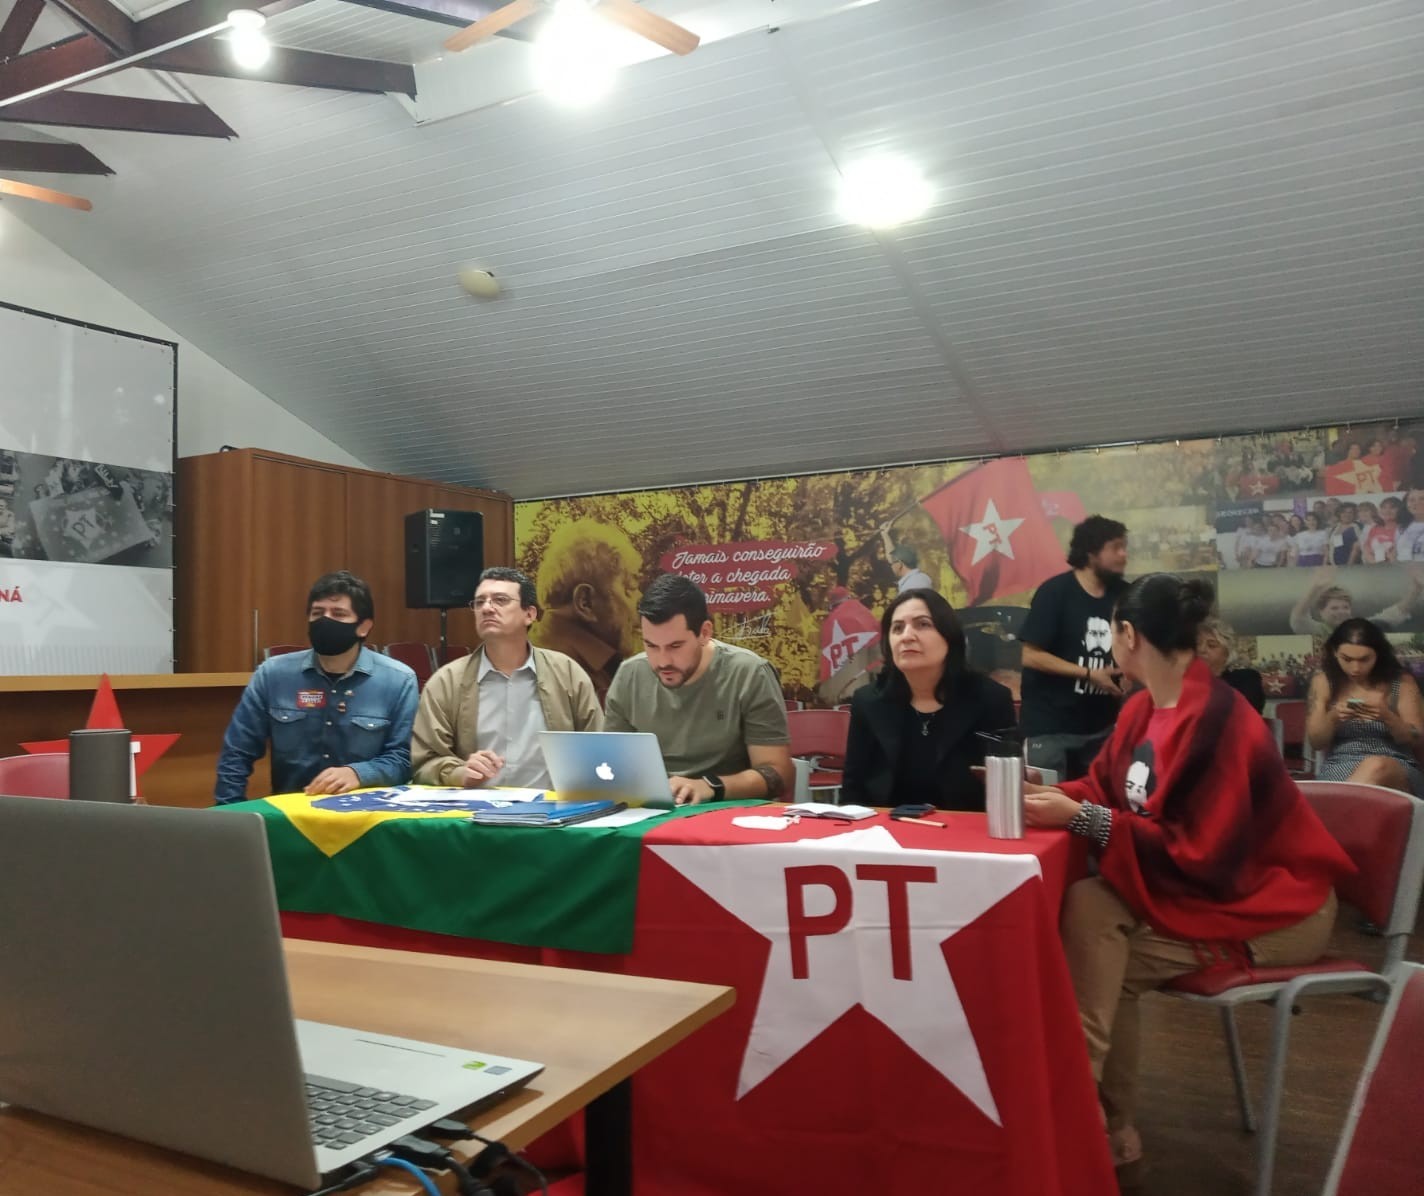 PT indica Requião ao governo do Paraná e Jorge Samek como vice